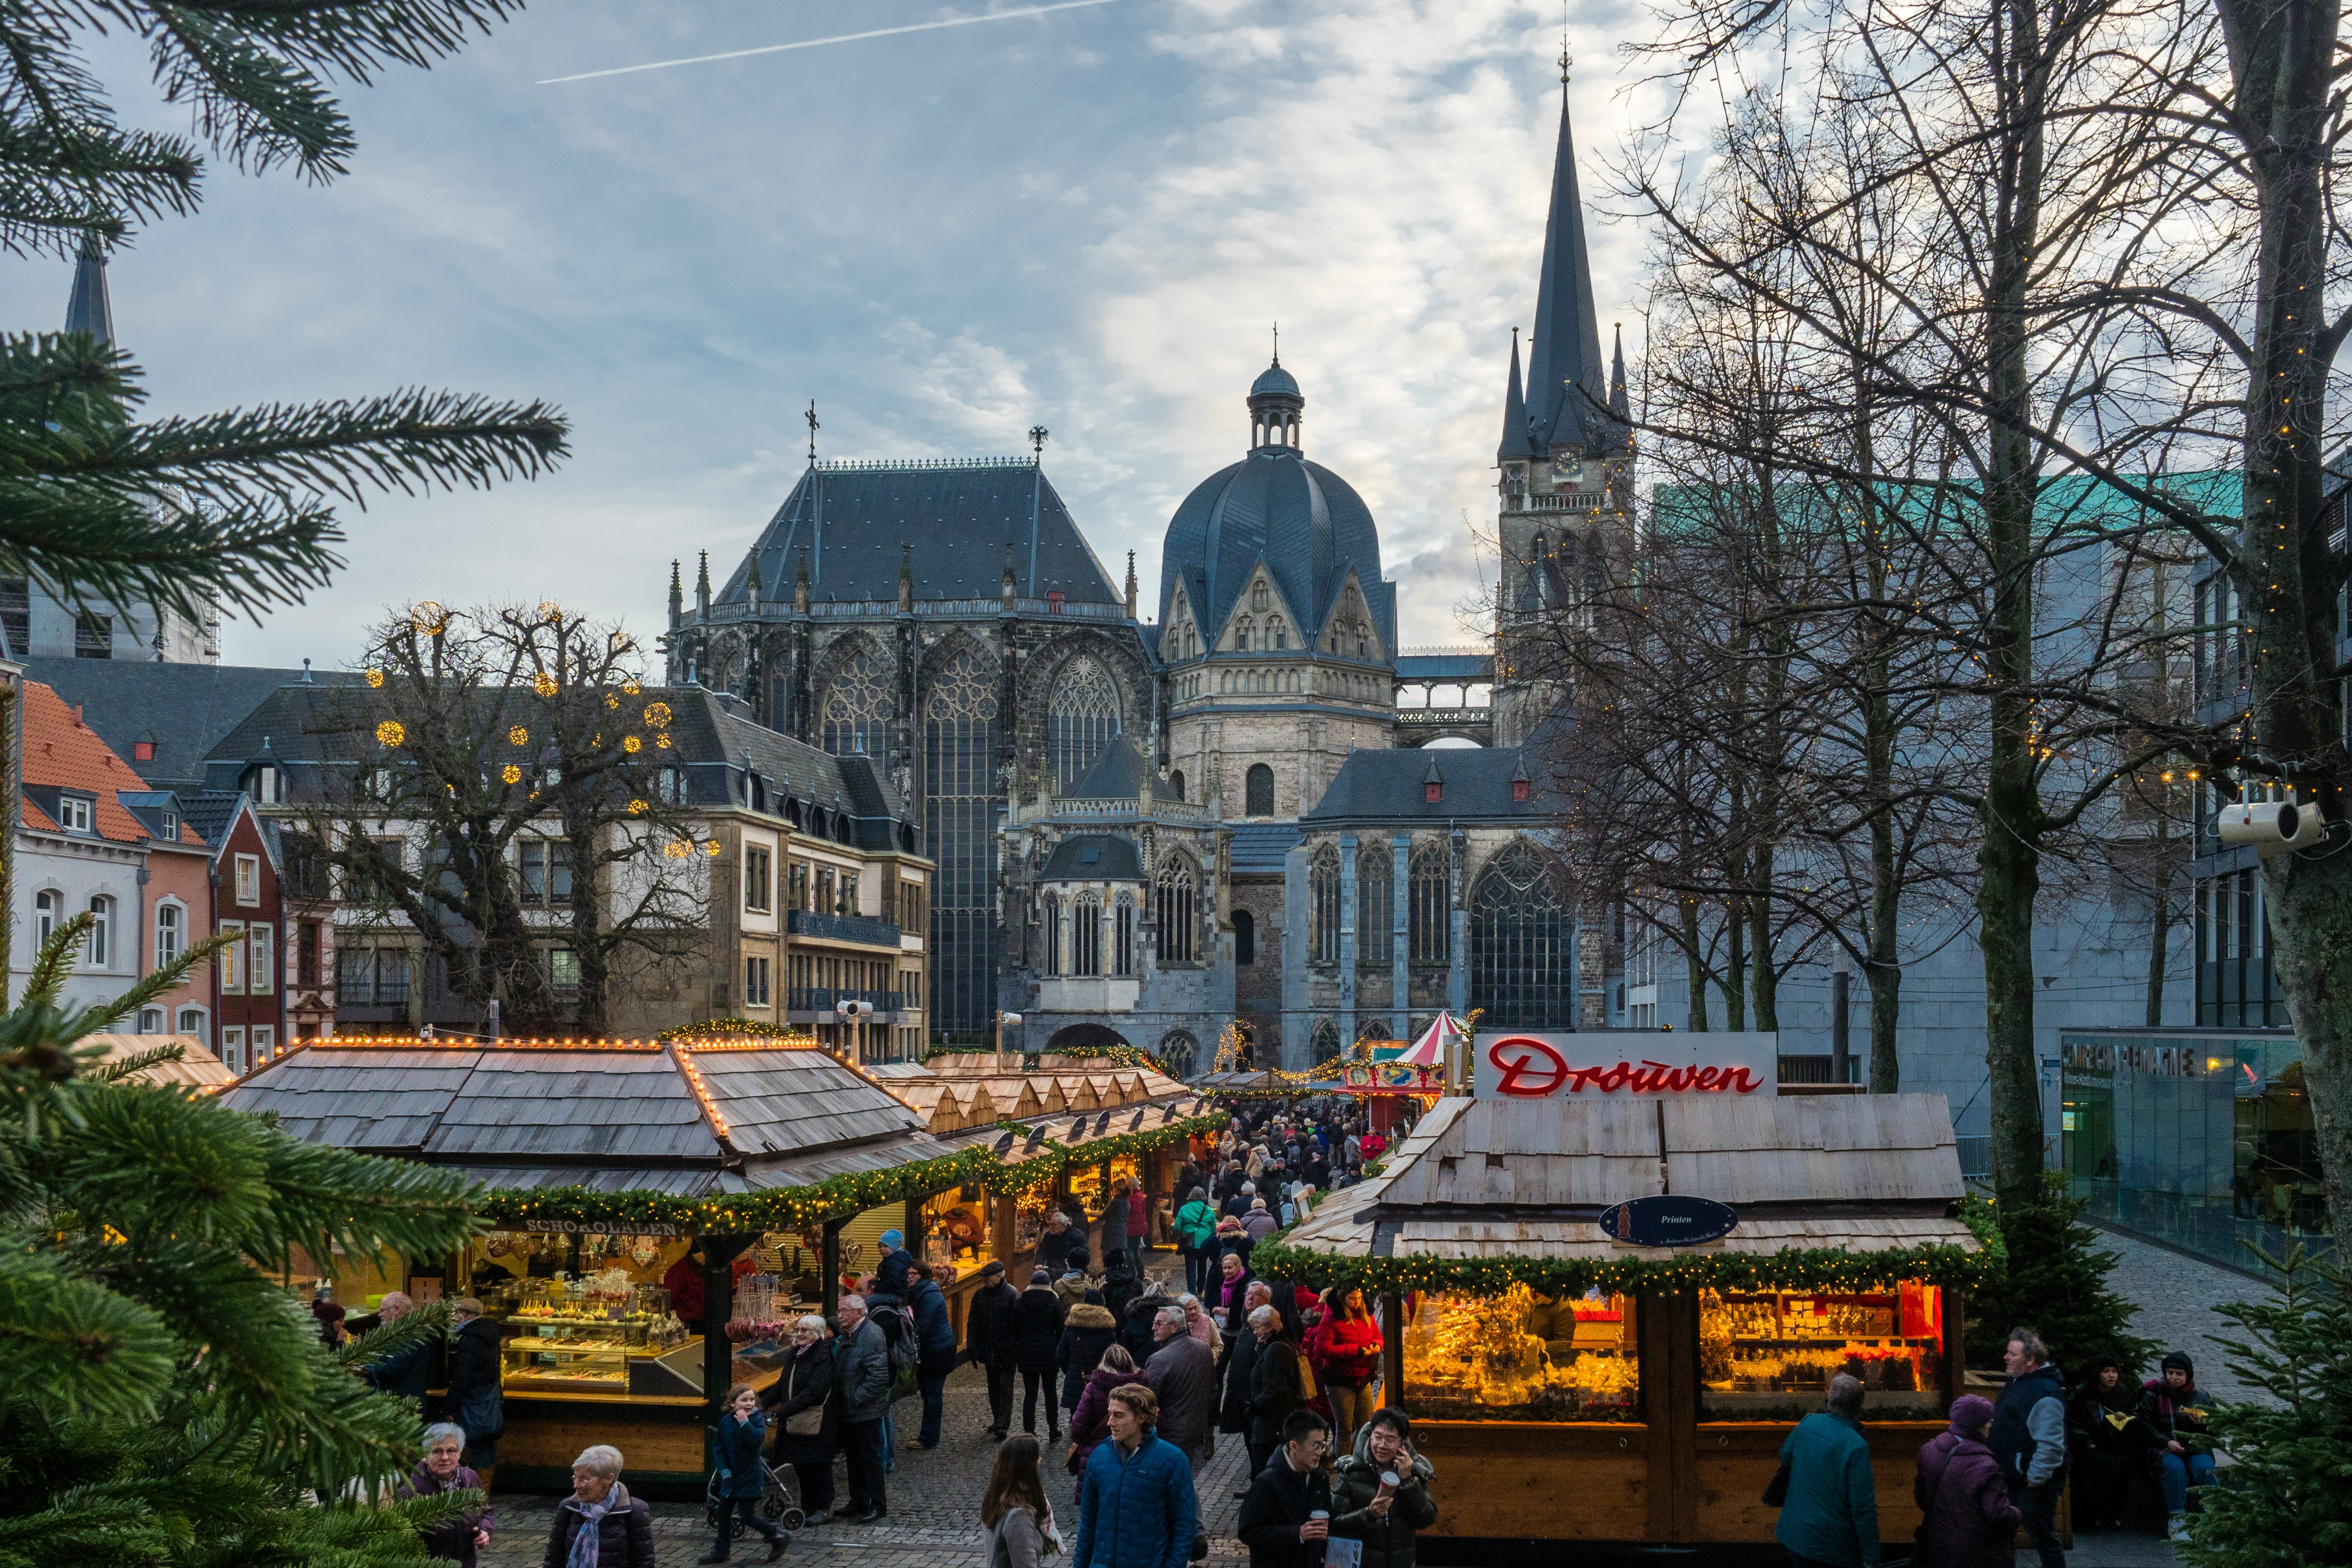 Christmas Market in Aachen, Germany